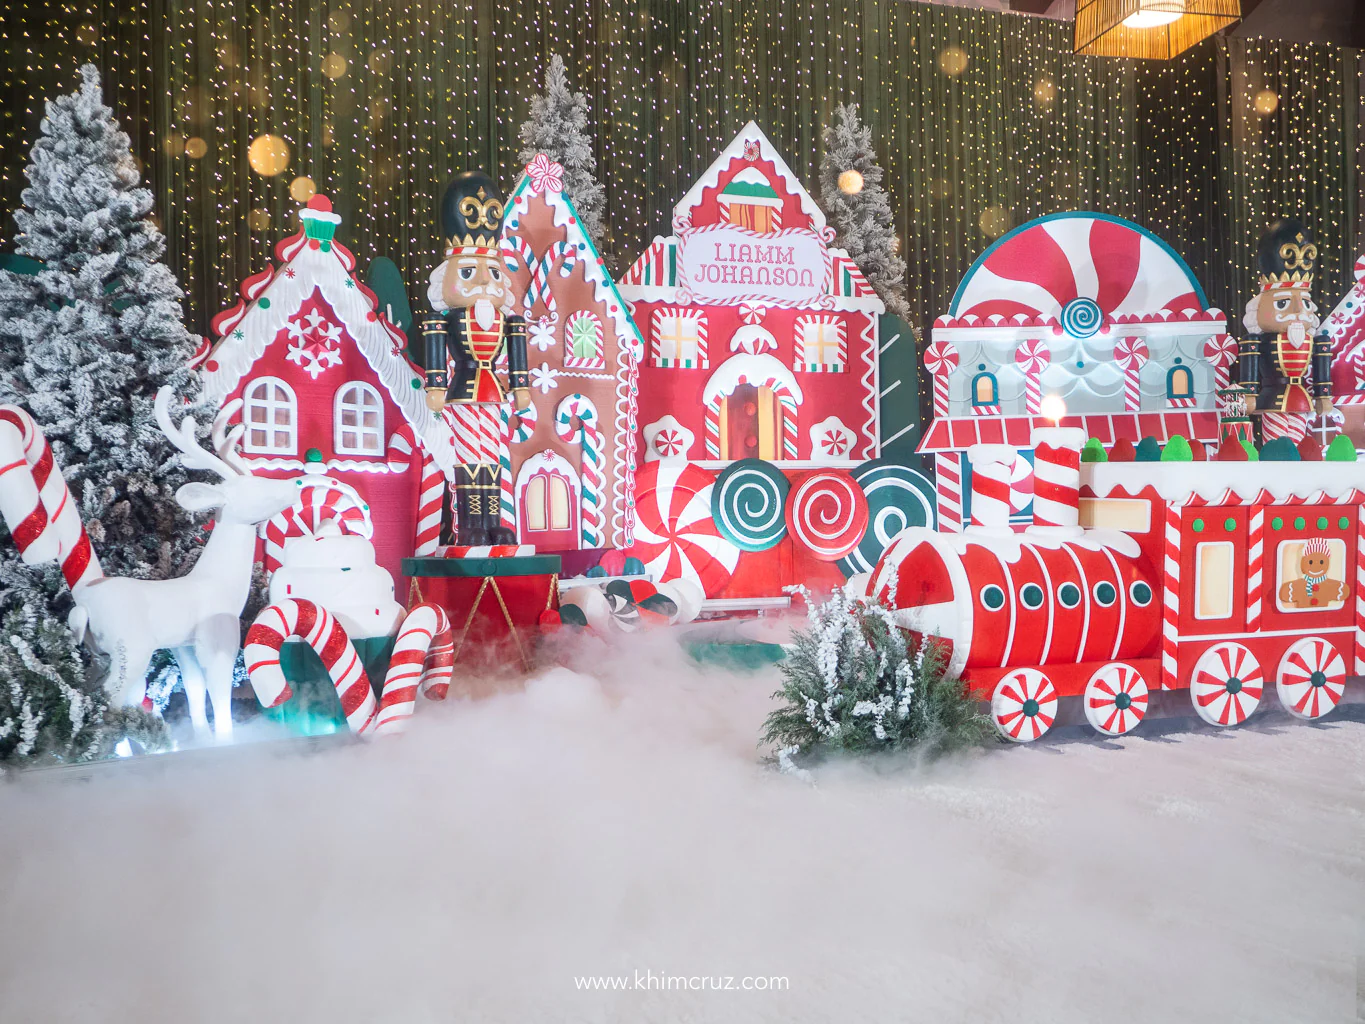 Sugar-Coated Dreams A Christmas Village Train Nutcracker Birthday Soiree Crafted by Khim Cruz